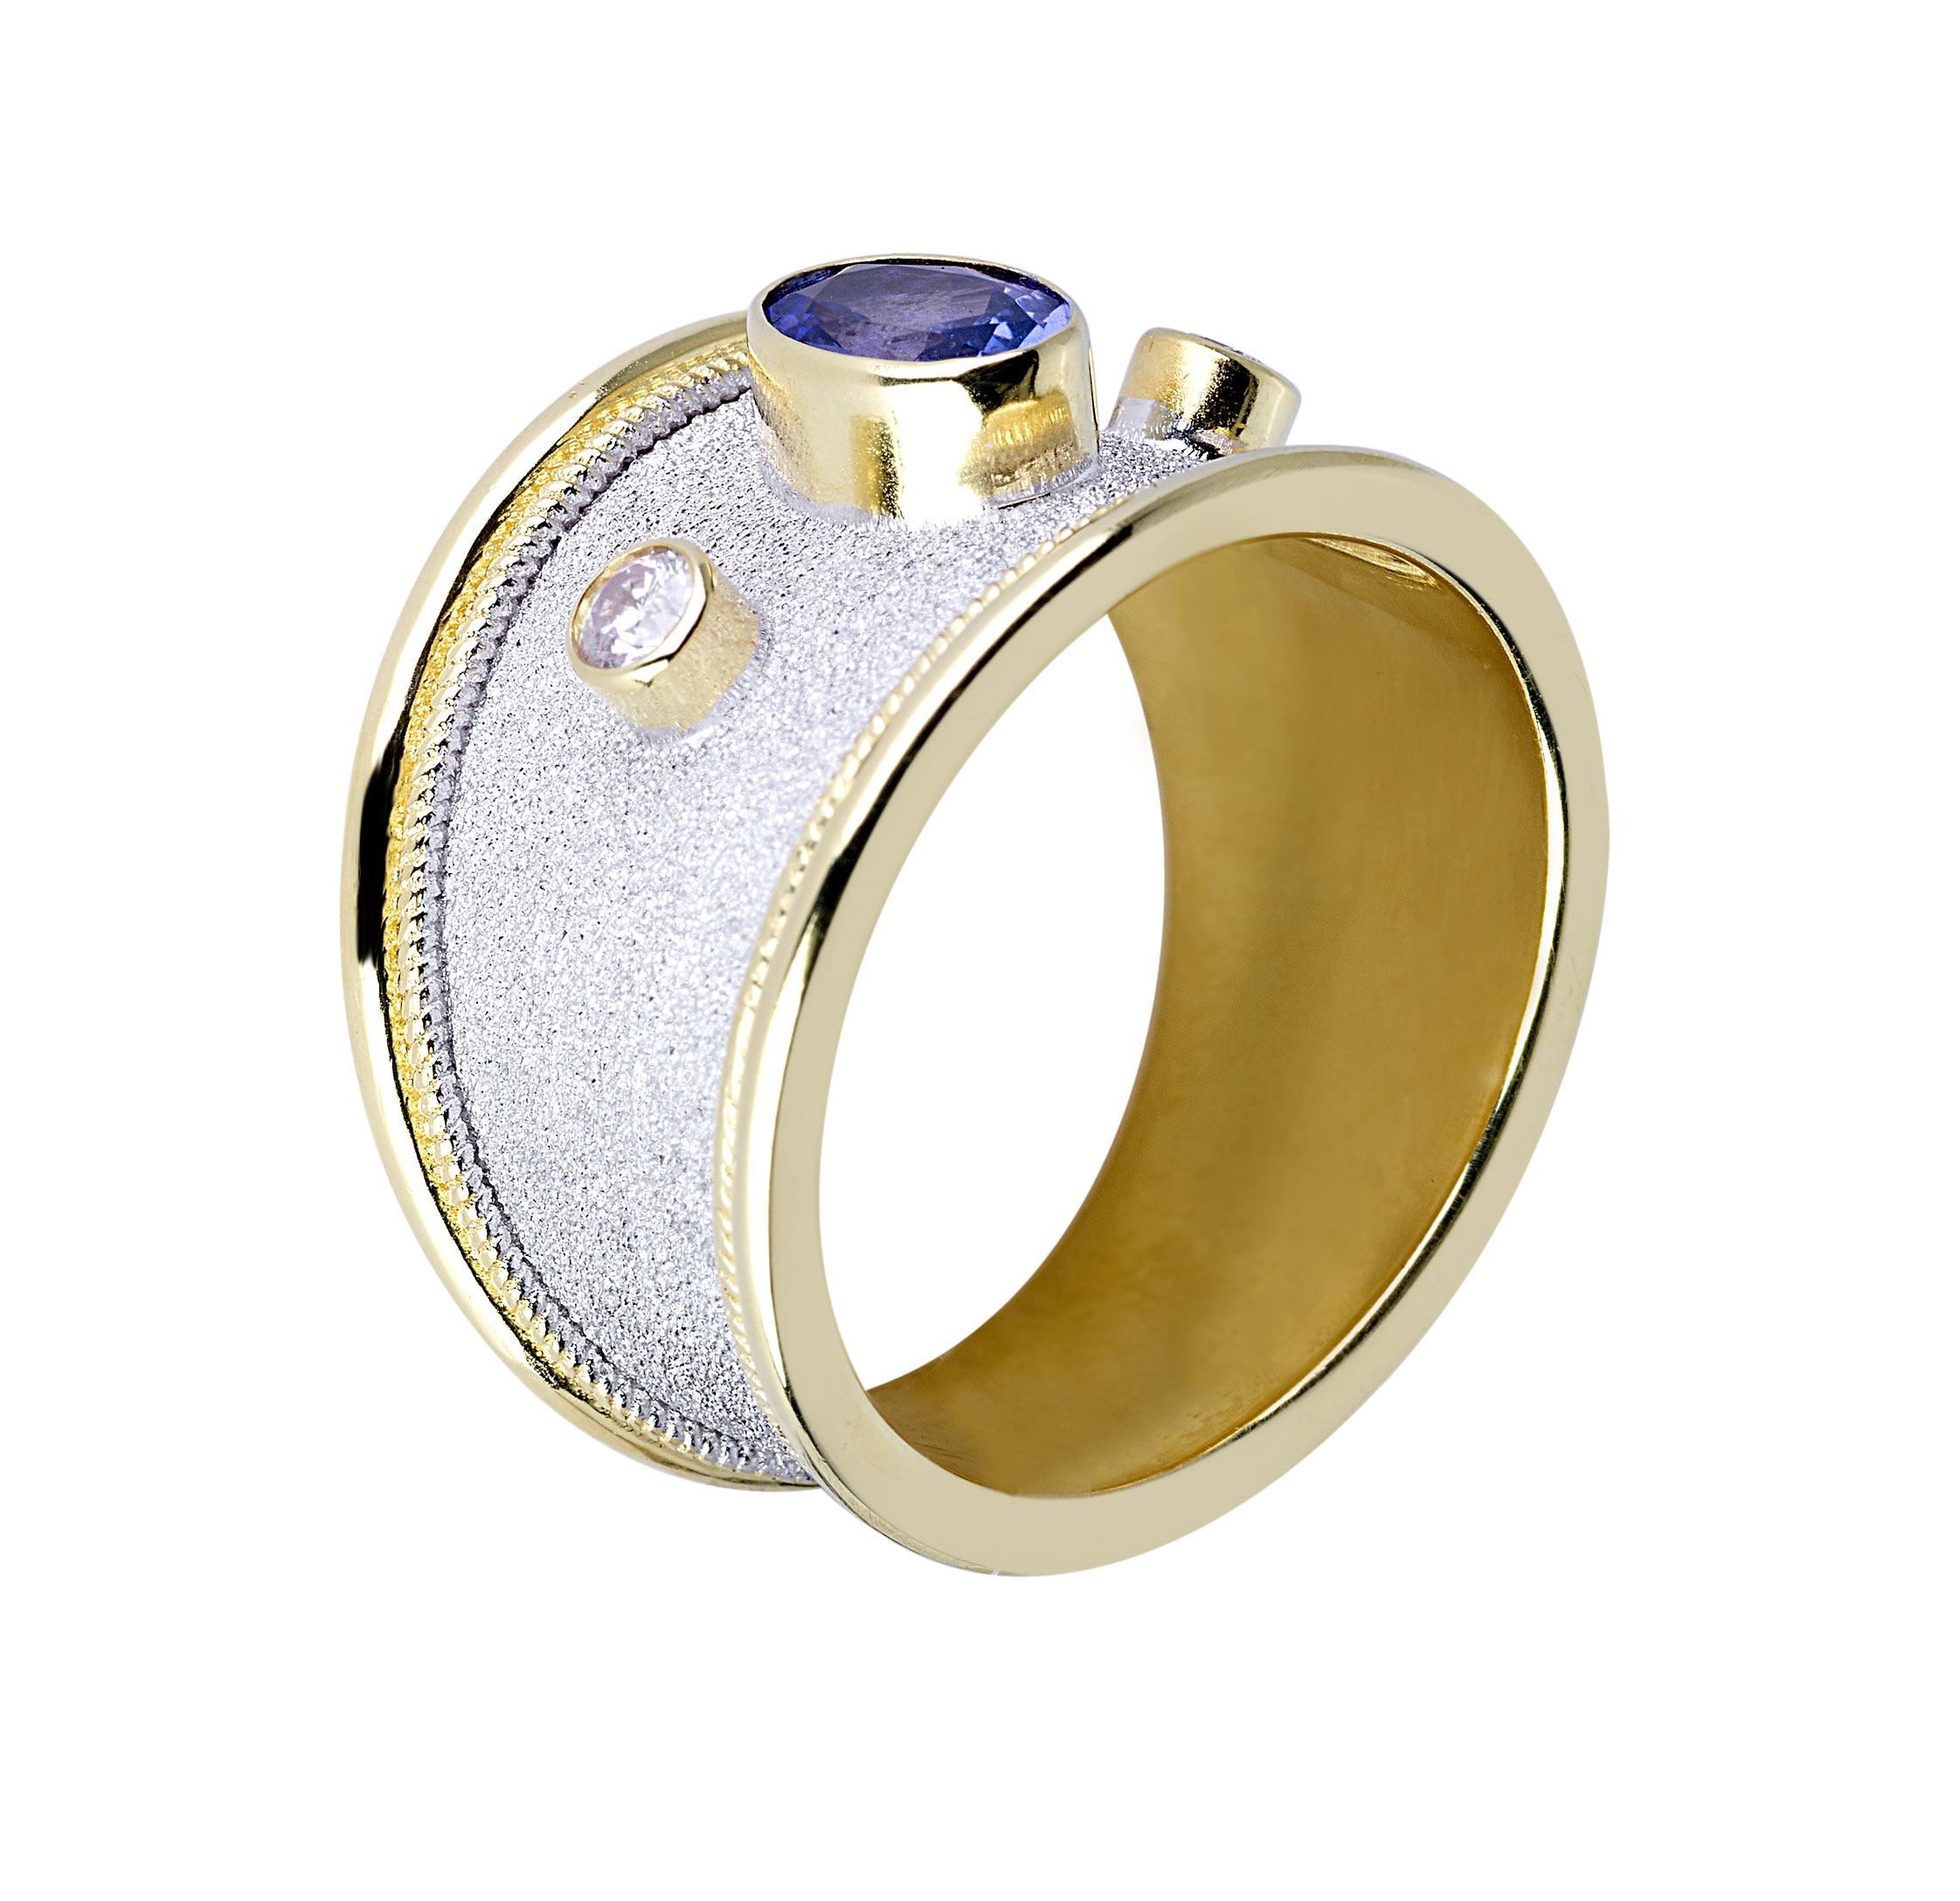 S.Georgios Designerring ist aus massivem 18 Karat Gelbgold handgefertigt und maßgefertigt. Der wunderschöne Ring zeigt einen Tansanit und 2 Diamanten im Kontrast zu einem Hintergrund aus byzantinischem Samt, der in weißem Rhodium ausgeführt ist. Das